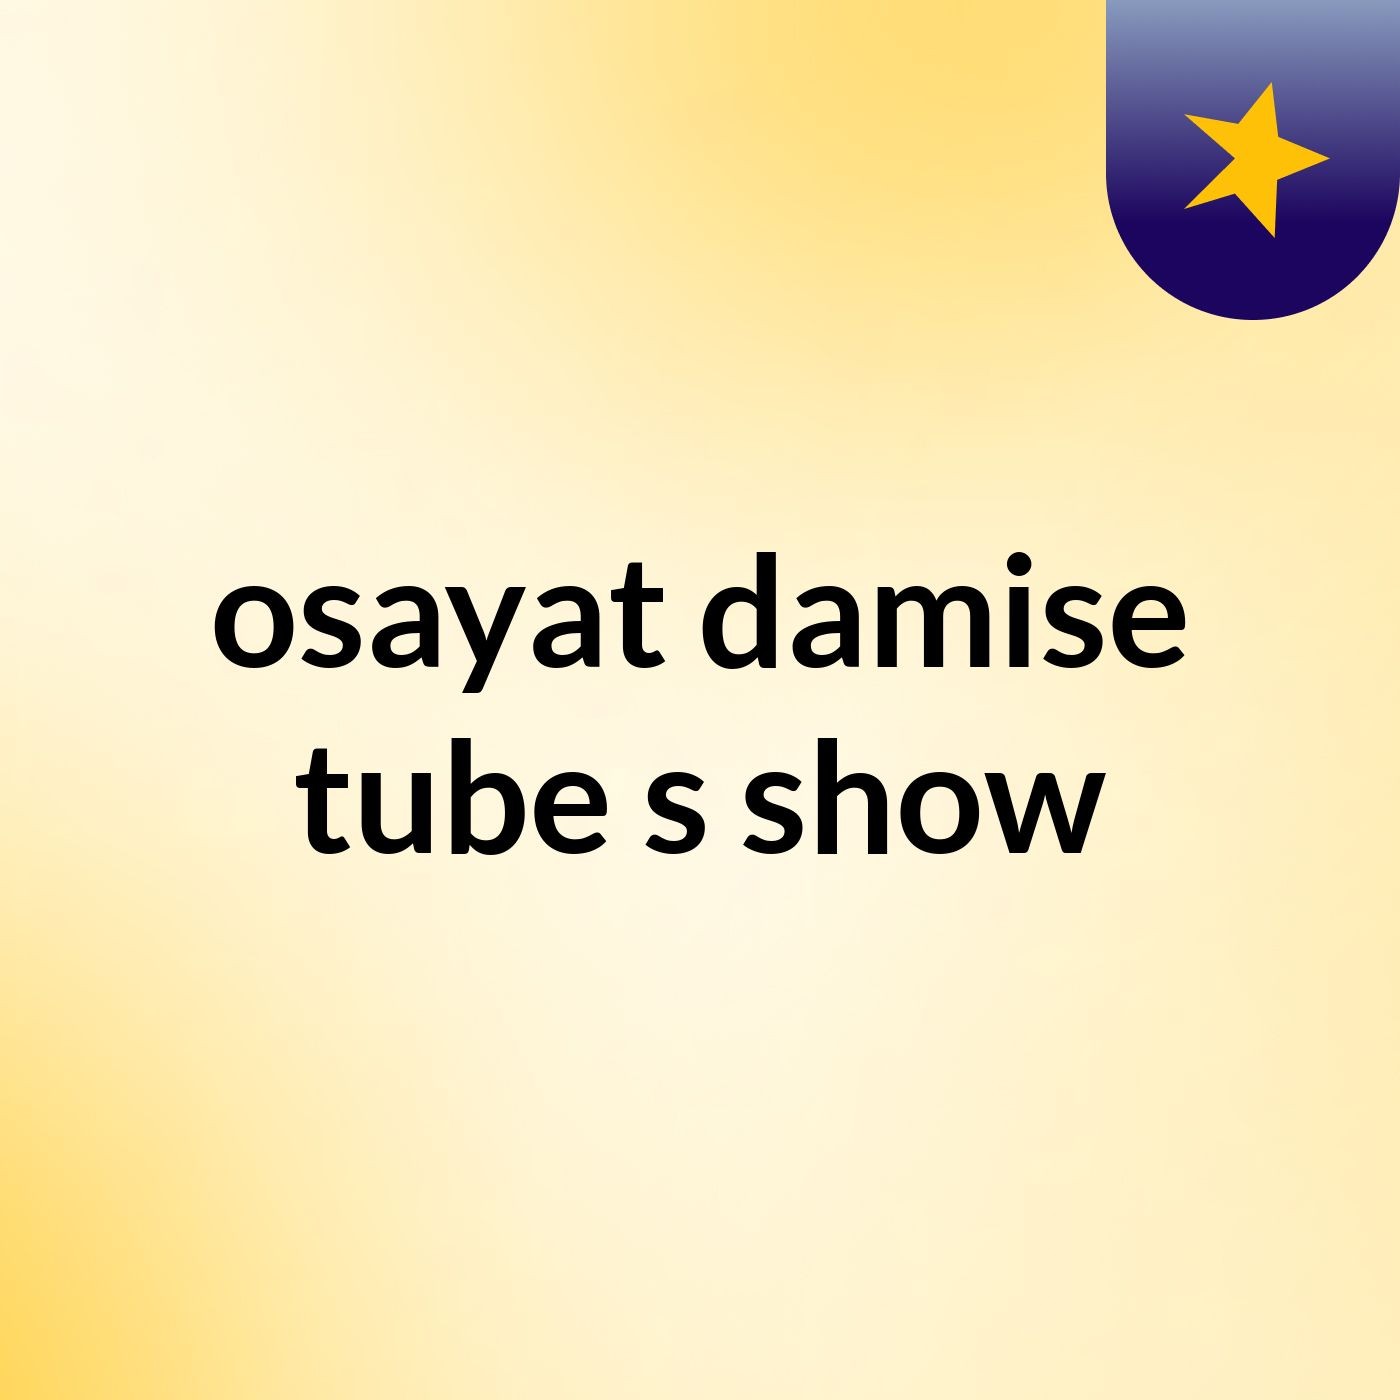 Episode 4 - osayat damise tube's show